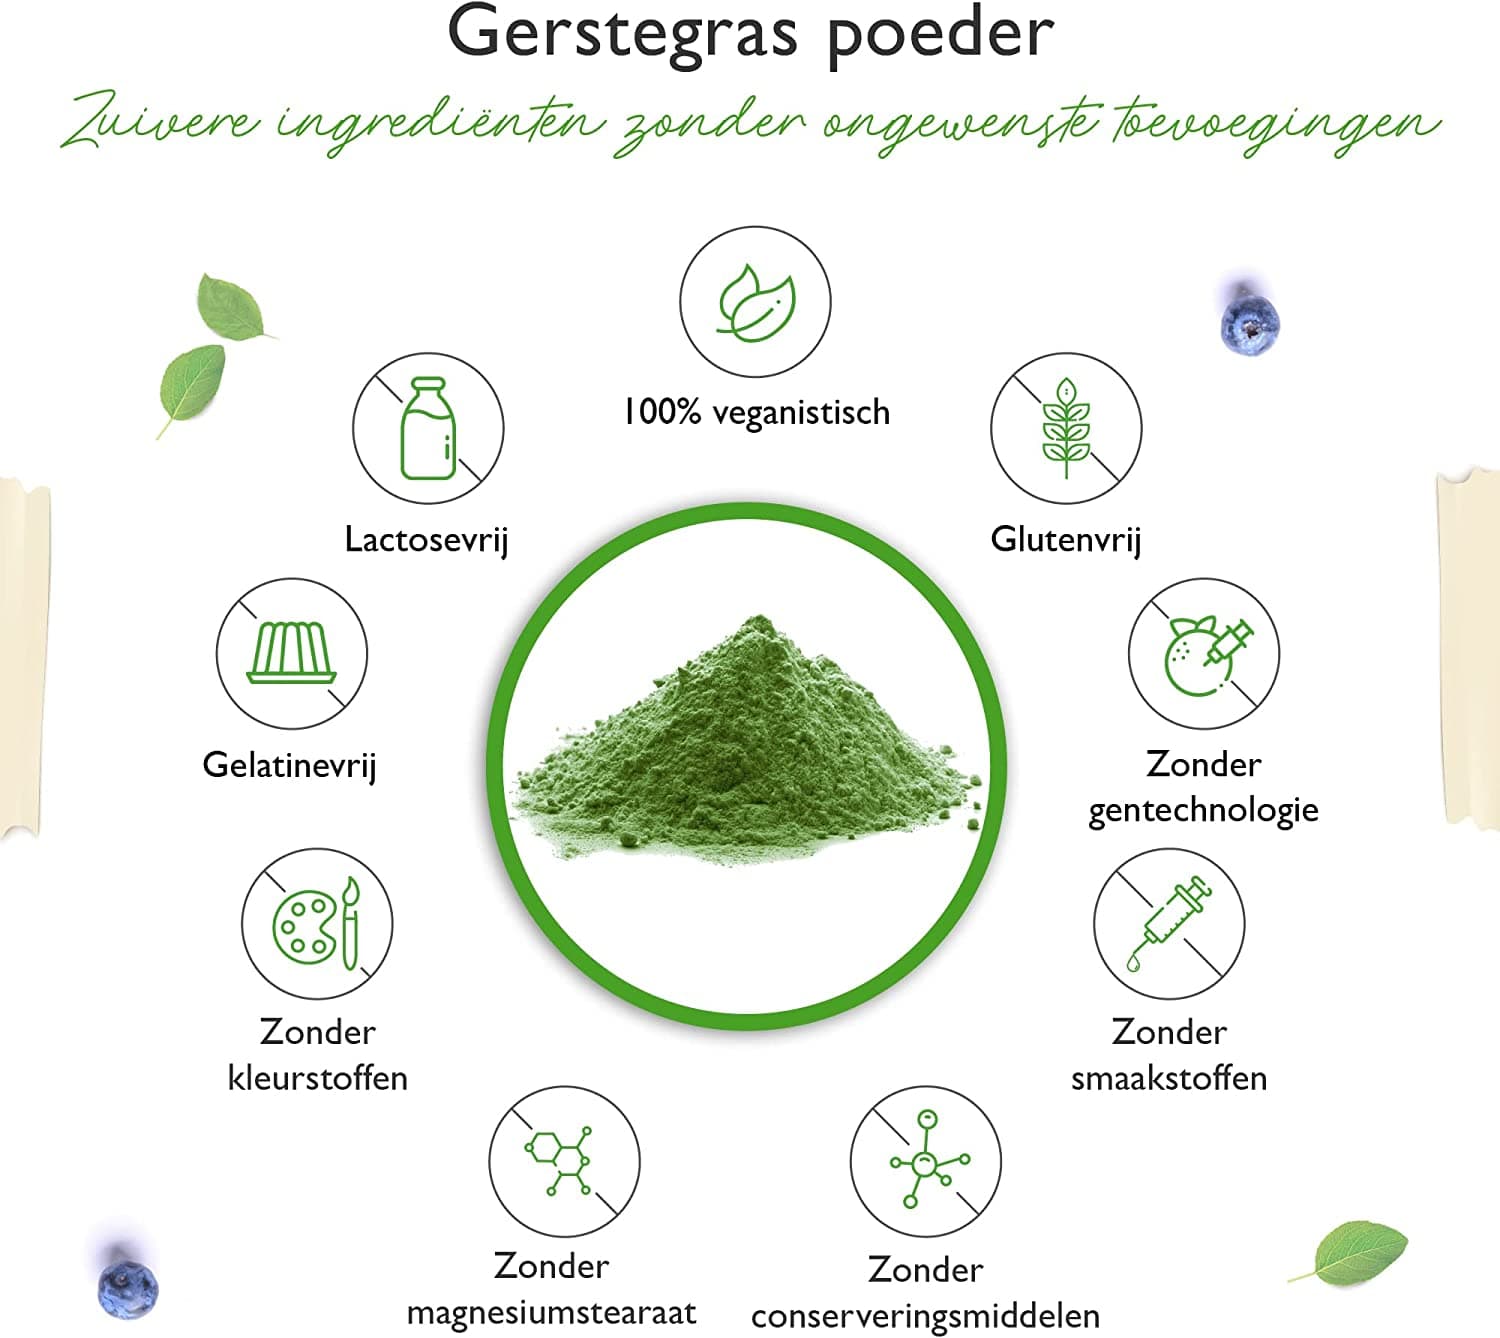 Vit4ever Gerstegras - 1100 g (1,1 kg) - Jong gerstegraspoeder - Herkomst Nederland - Rijk aan mineralen & vitaminen